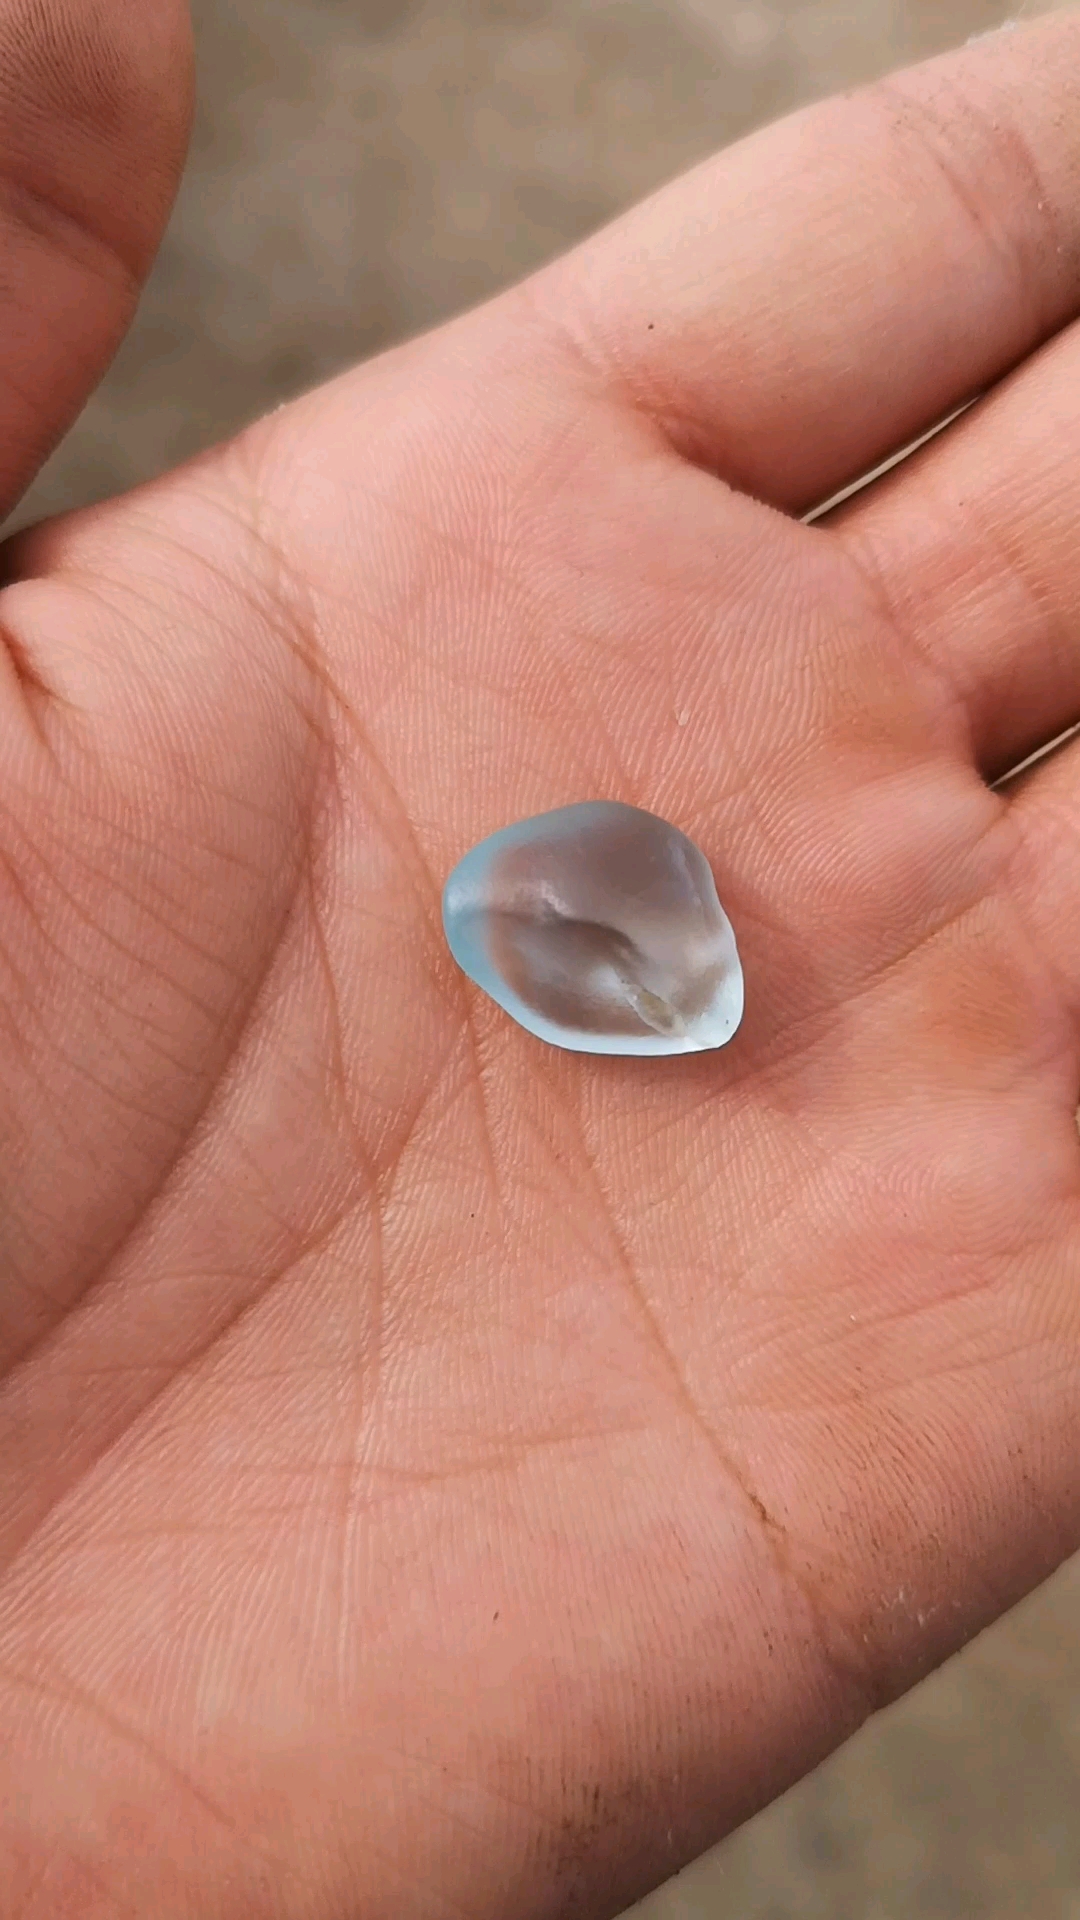 阿拉泰地区戈壁滩上产的海蓝宝石,捡到这样的一块运气好好的